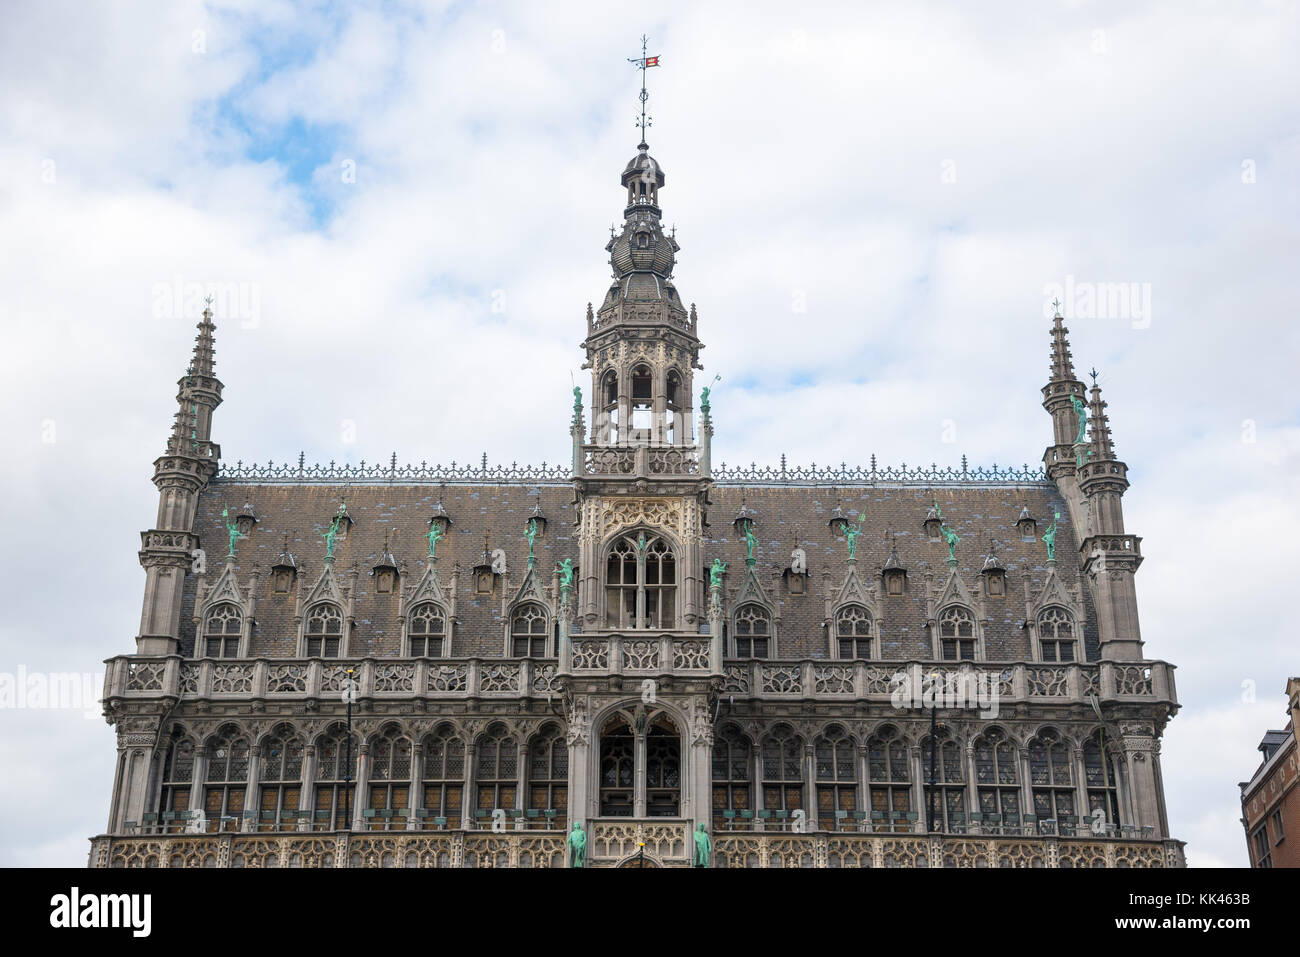 Bruxelles, Belgique - 22 Avril 2017 : Bruxelles Musée de la ville, localiser sur la célèbre Grand Place - Bruxelles, Belgique Banque D'Images